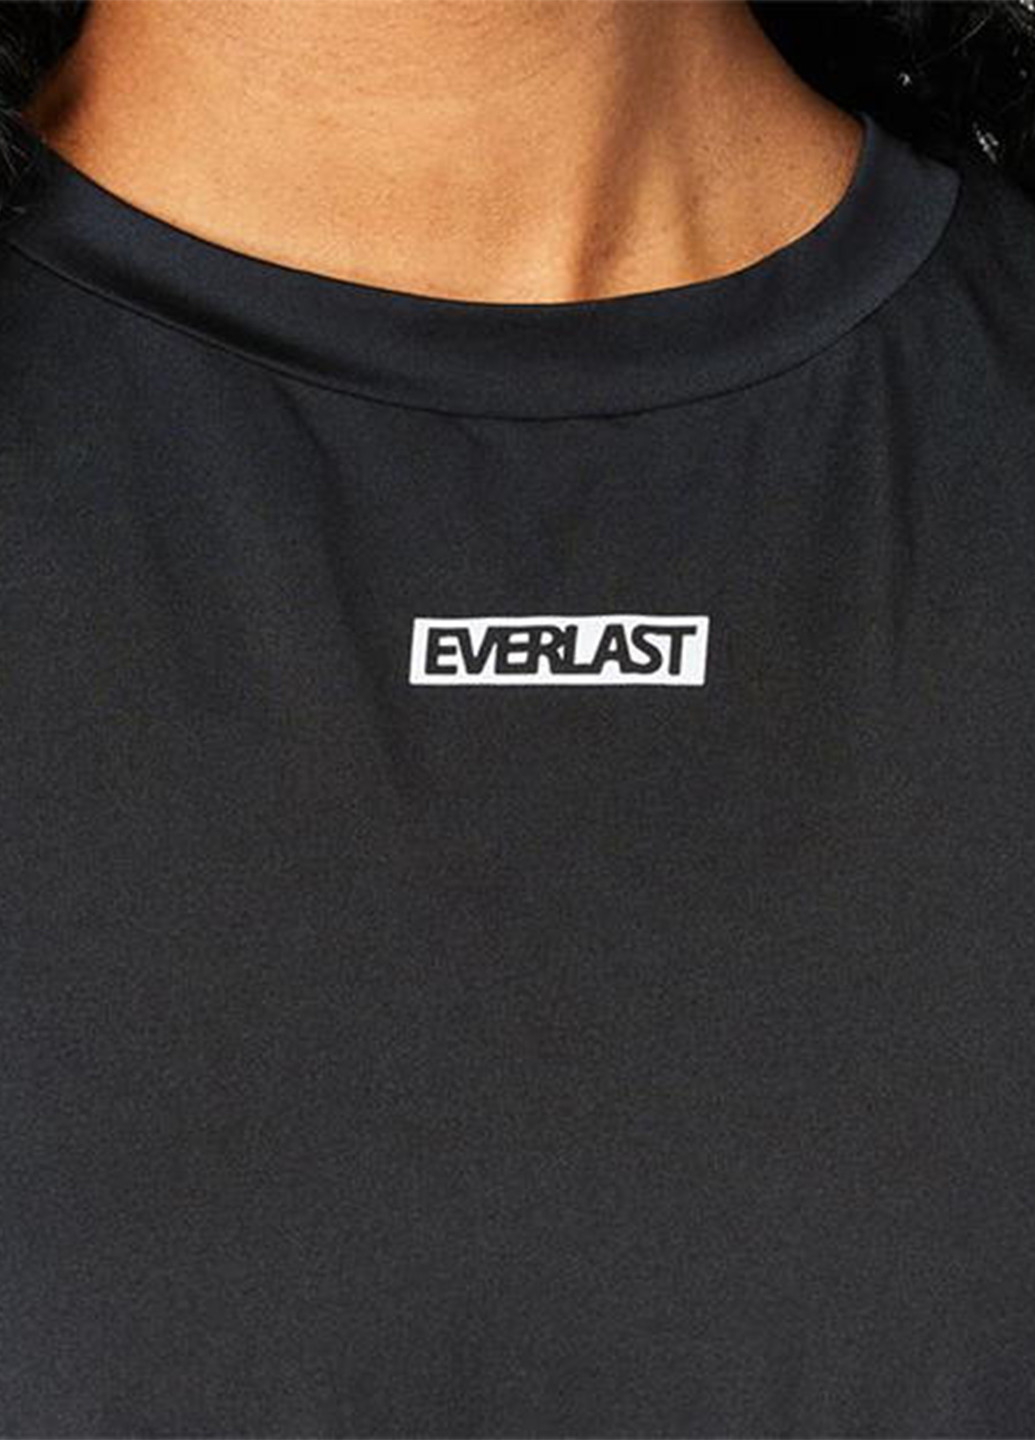 Комбинезон Everlast комбинезон-шорты надпись чёрный спортивный полиэстер